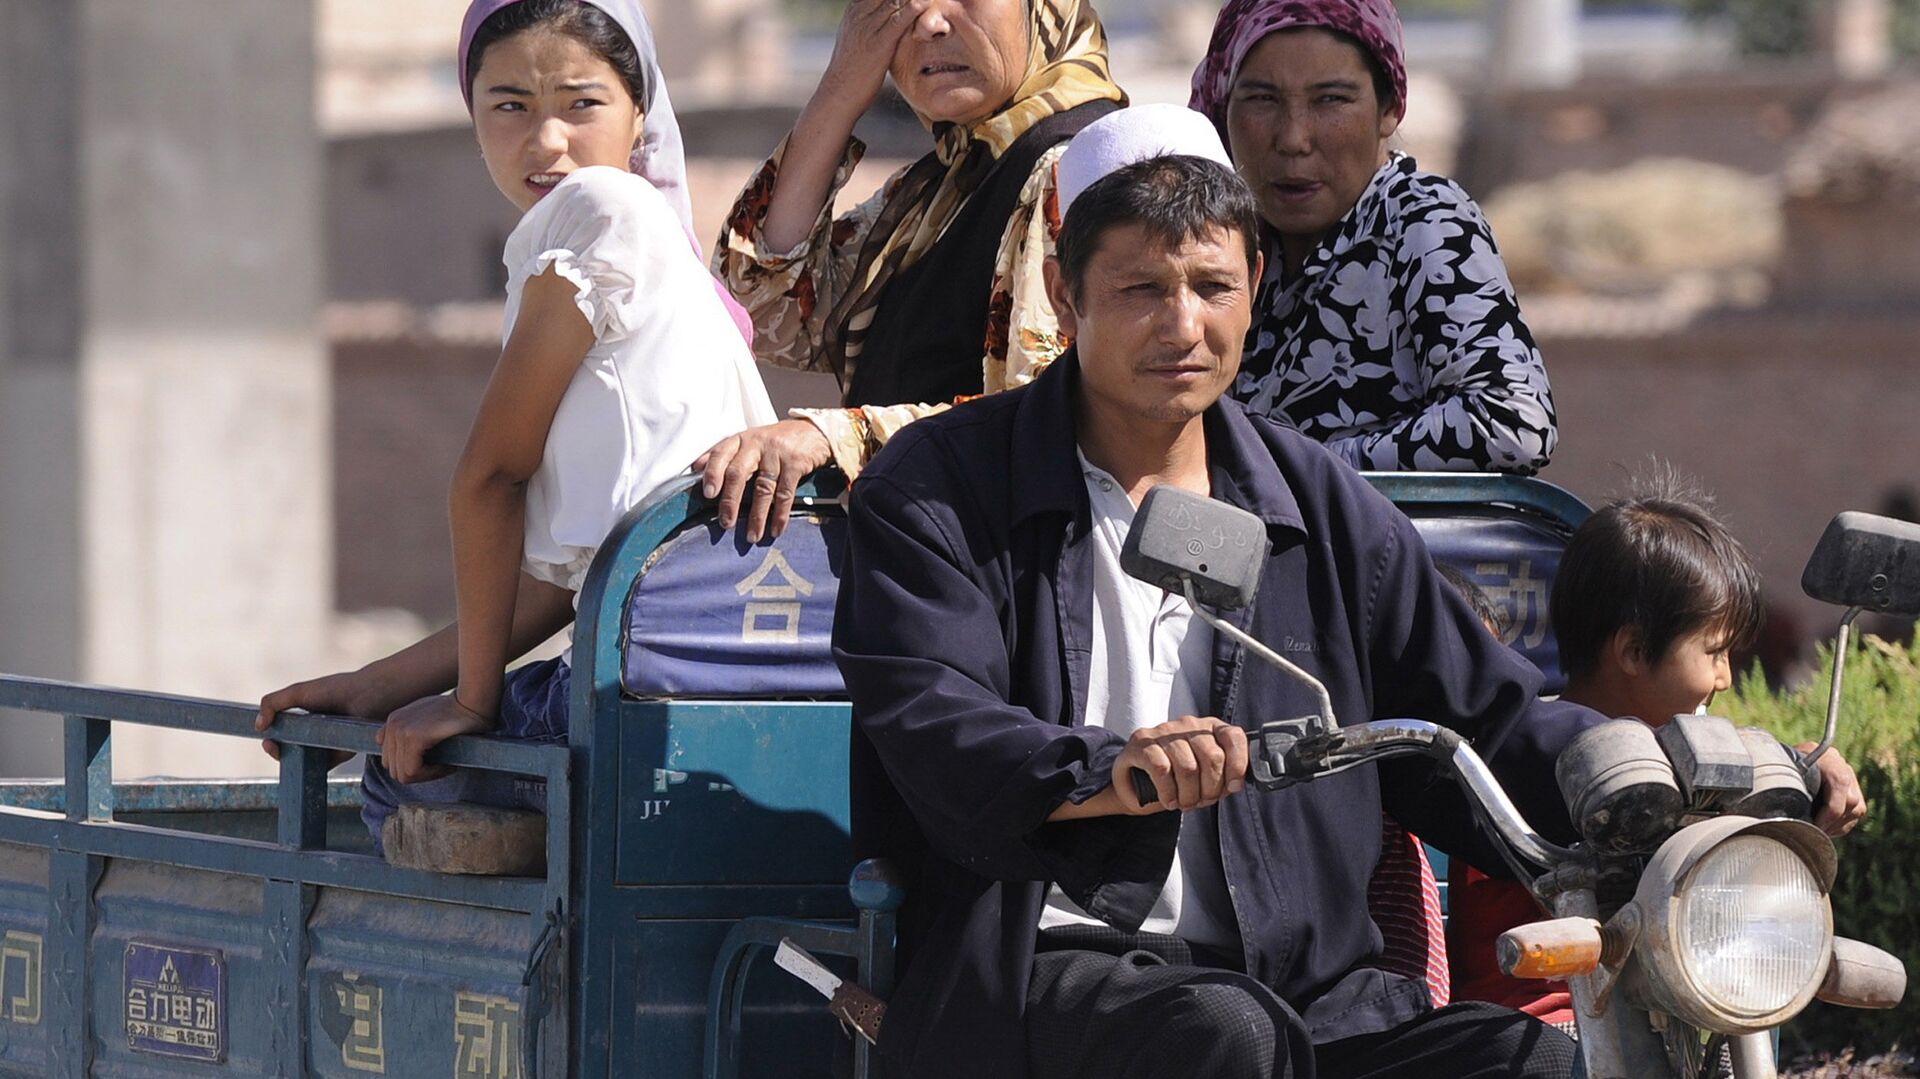 أفراد من أقلية مسلمة في غرب الصين في منطقة شينجيانغ المسلمة بشكل رئيسي في 30 يوليو 2008 - سبوتنيك عربي, 1920, 22.03.2021